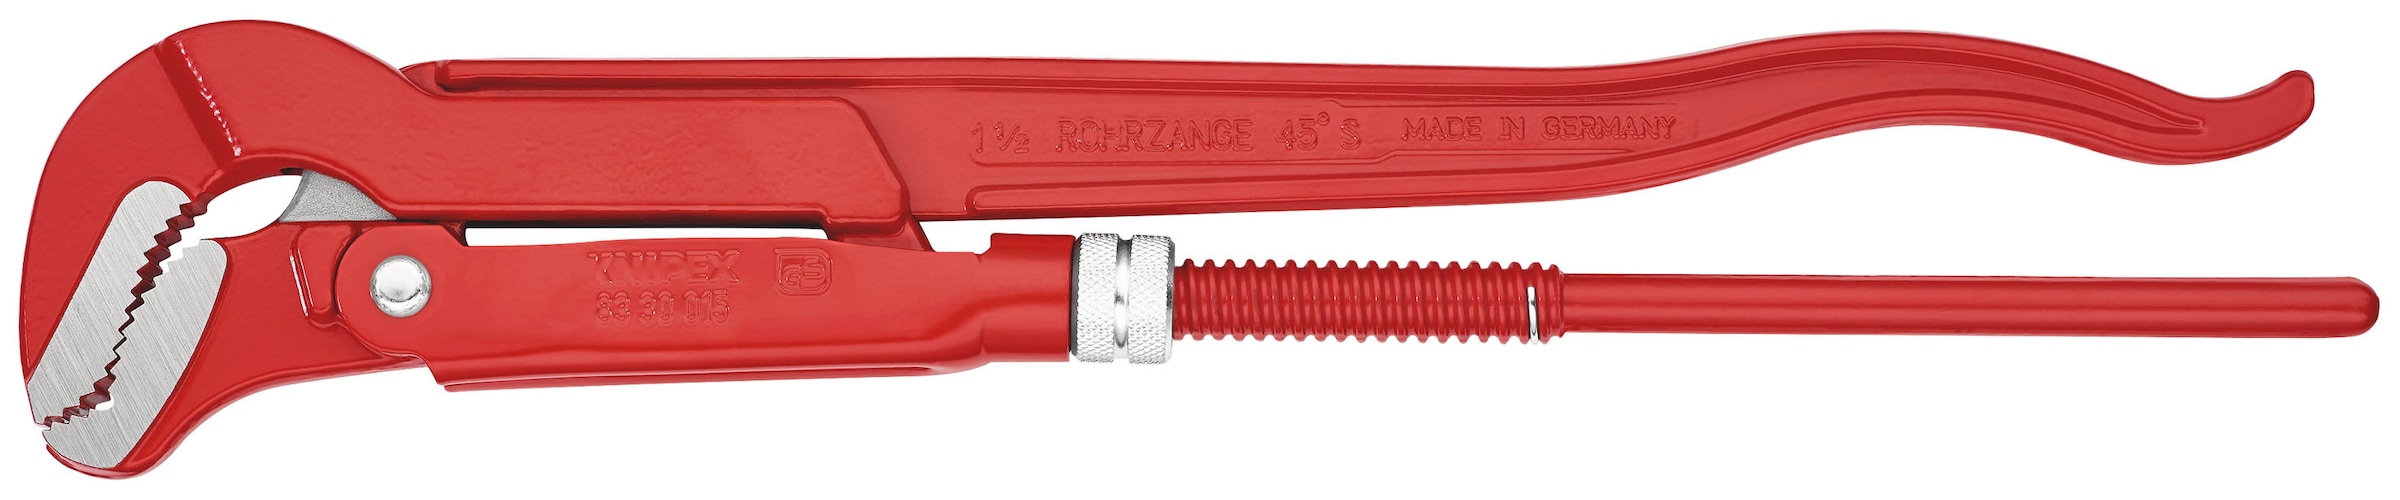 Knipex Rohrzange »83 30 015 S-Maul«, (1 tlg.), rot pulverbeschichtet 420 mm